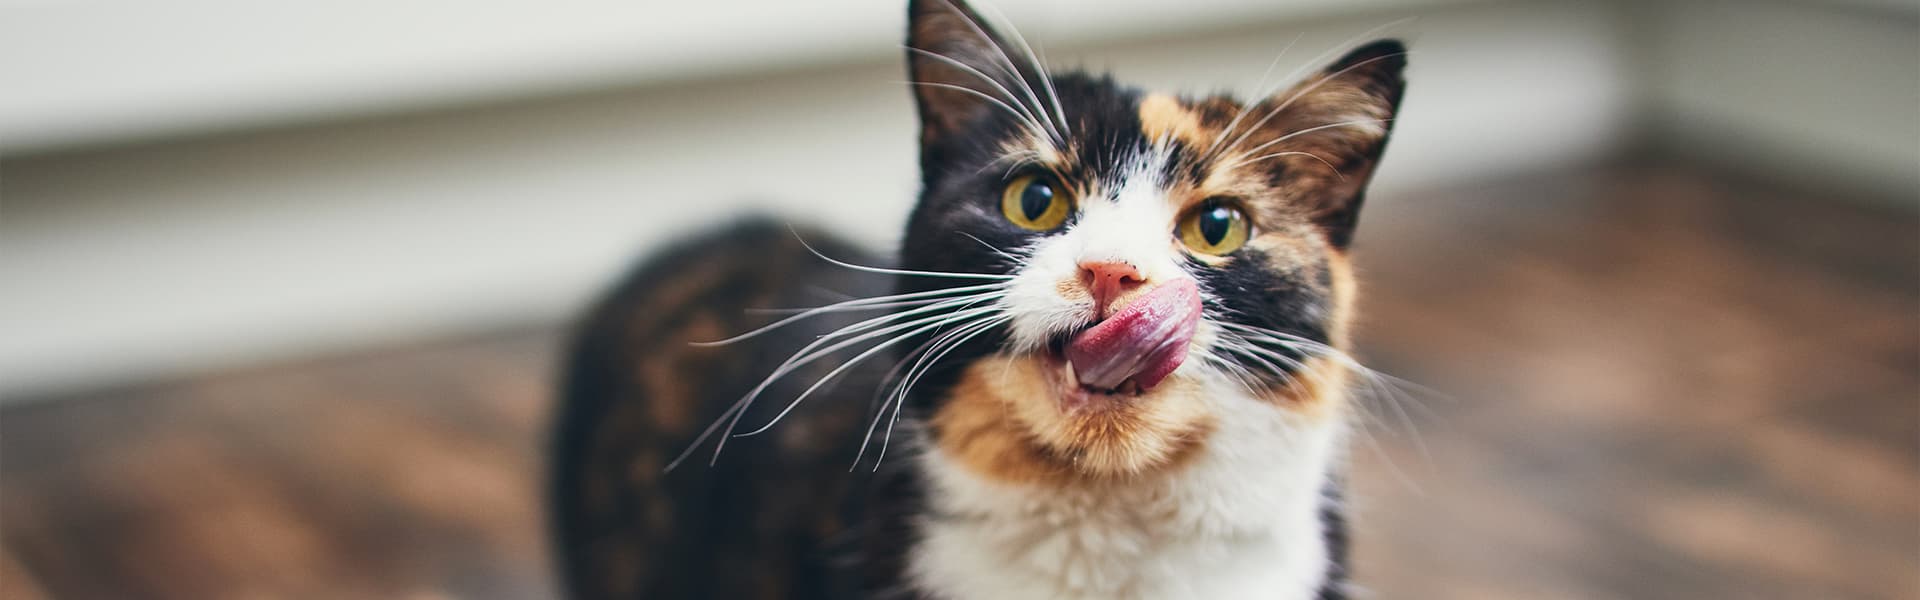 Tricolor Katze schleckt sich mit ihrer Zunge durch ihr Gesicht